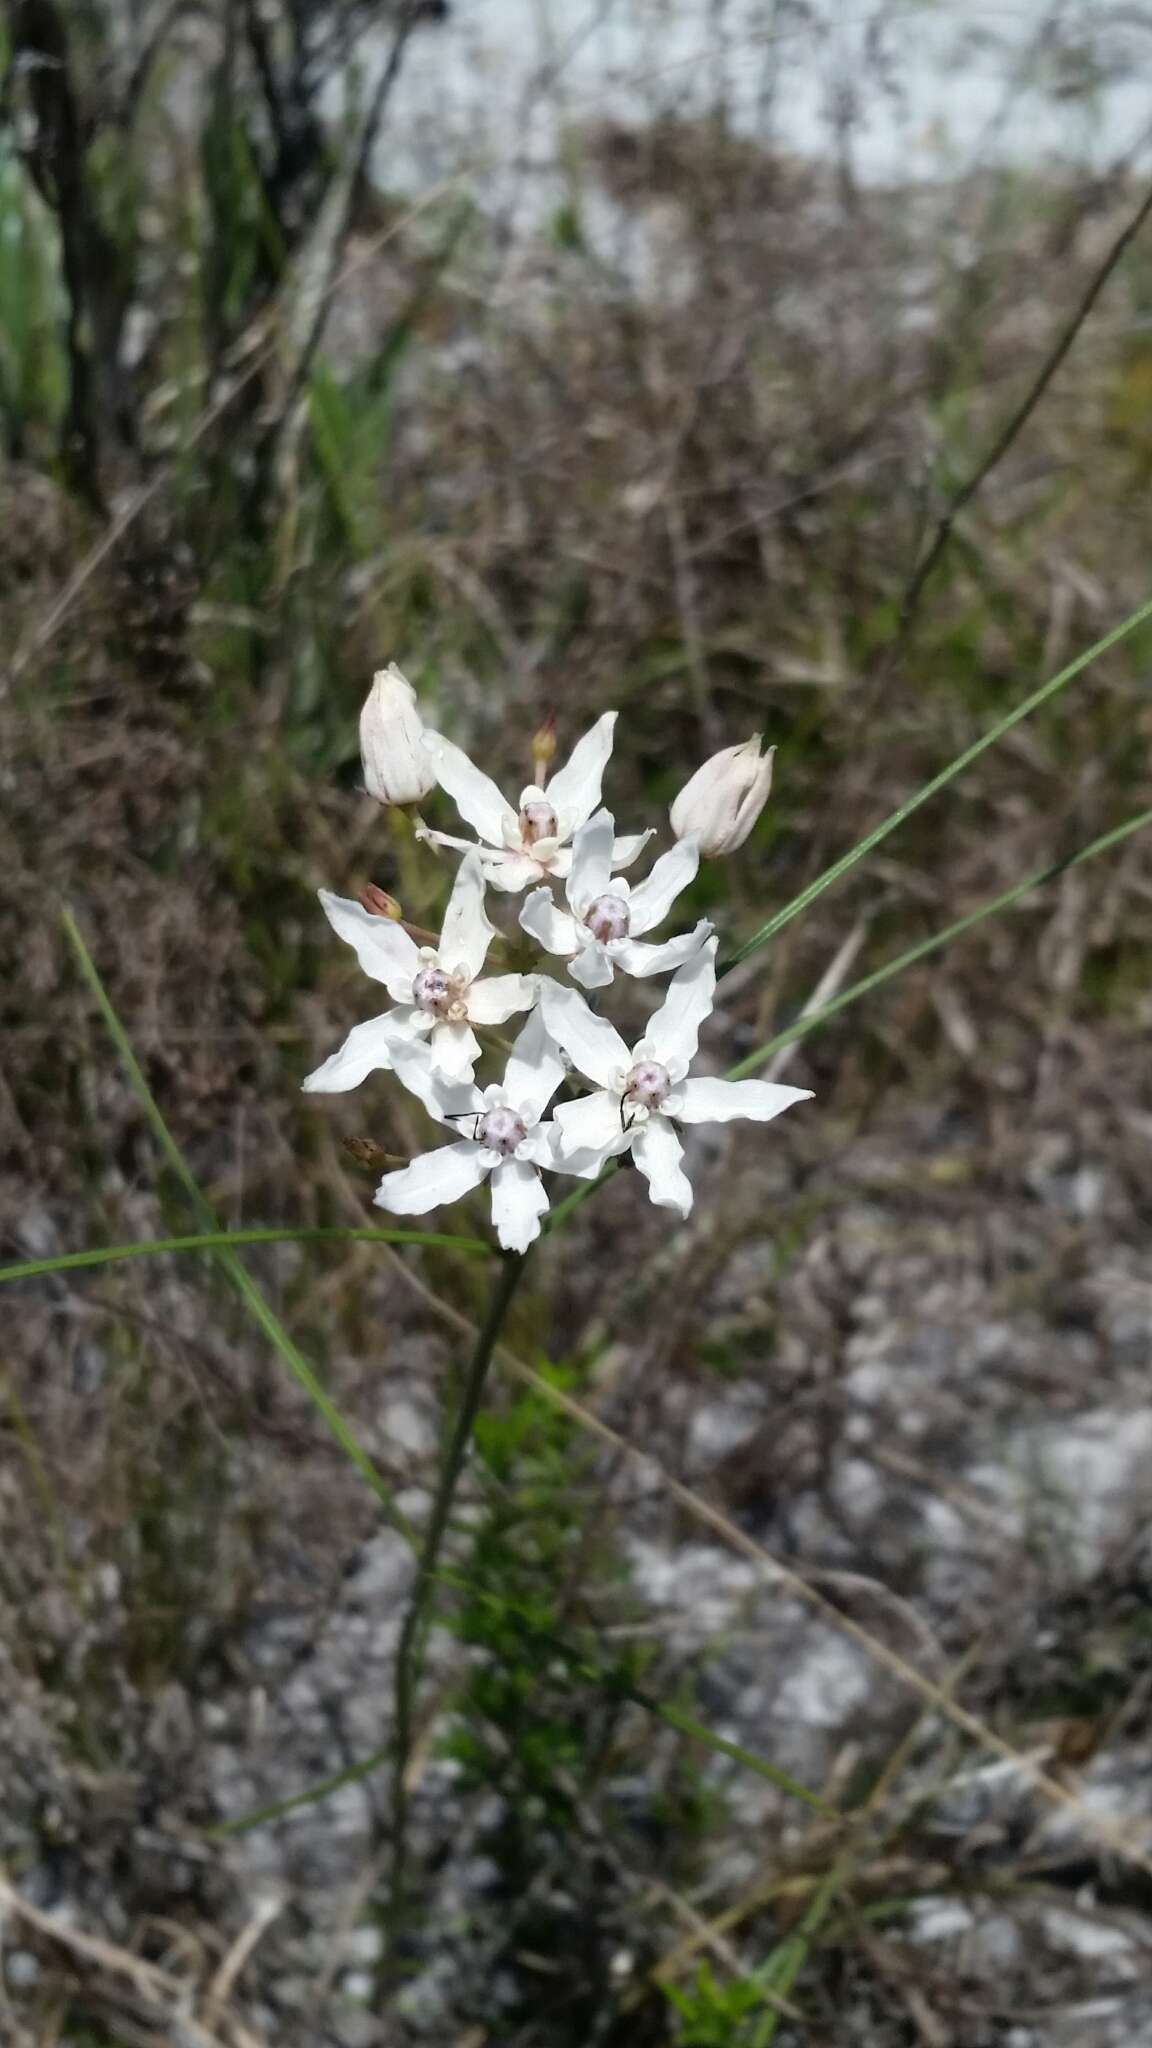 Image of Florida milkweed